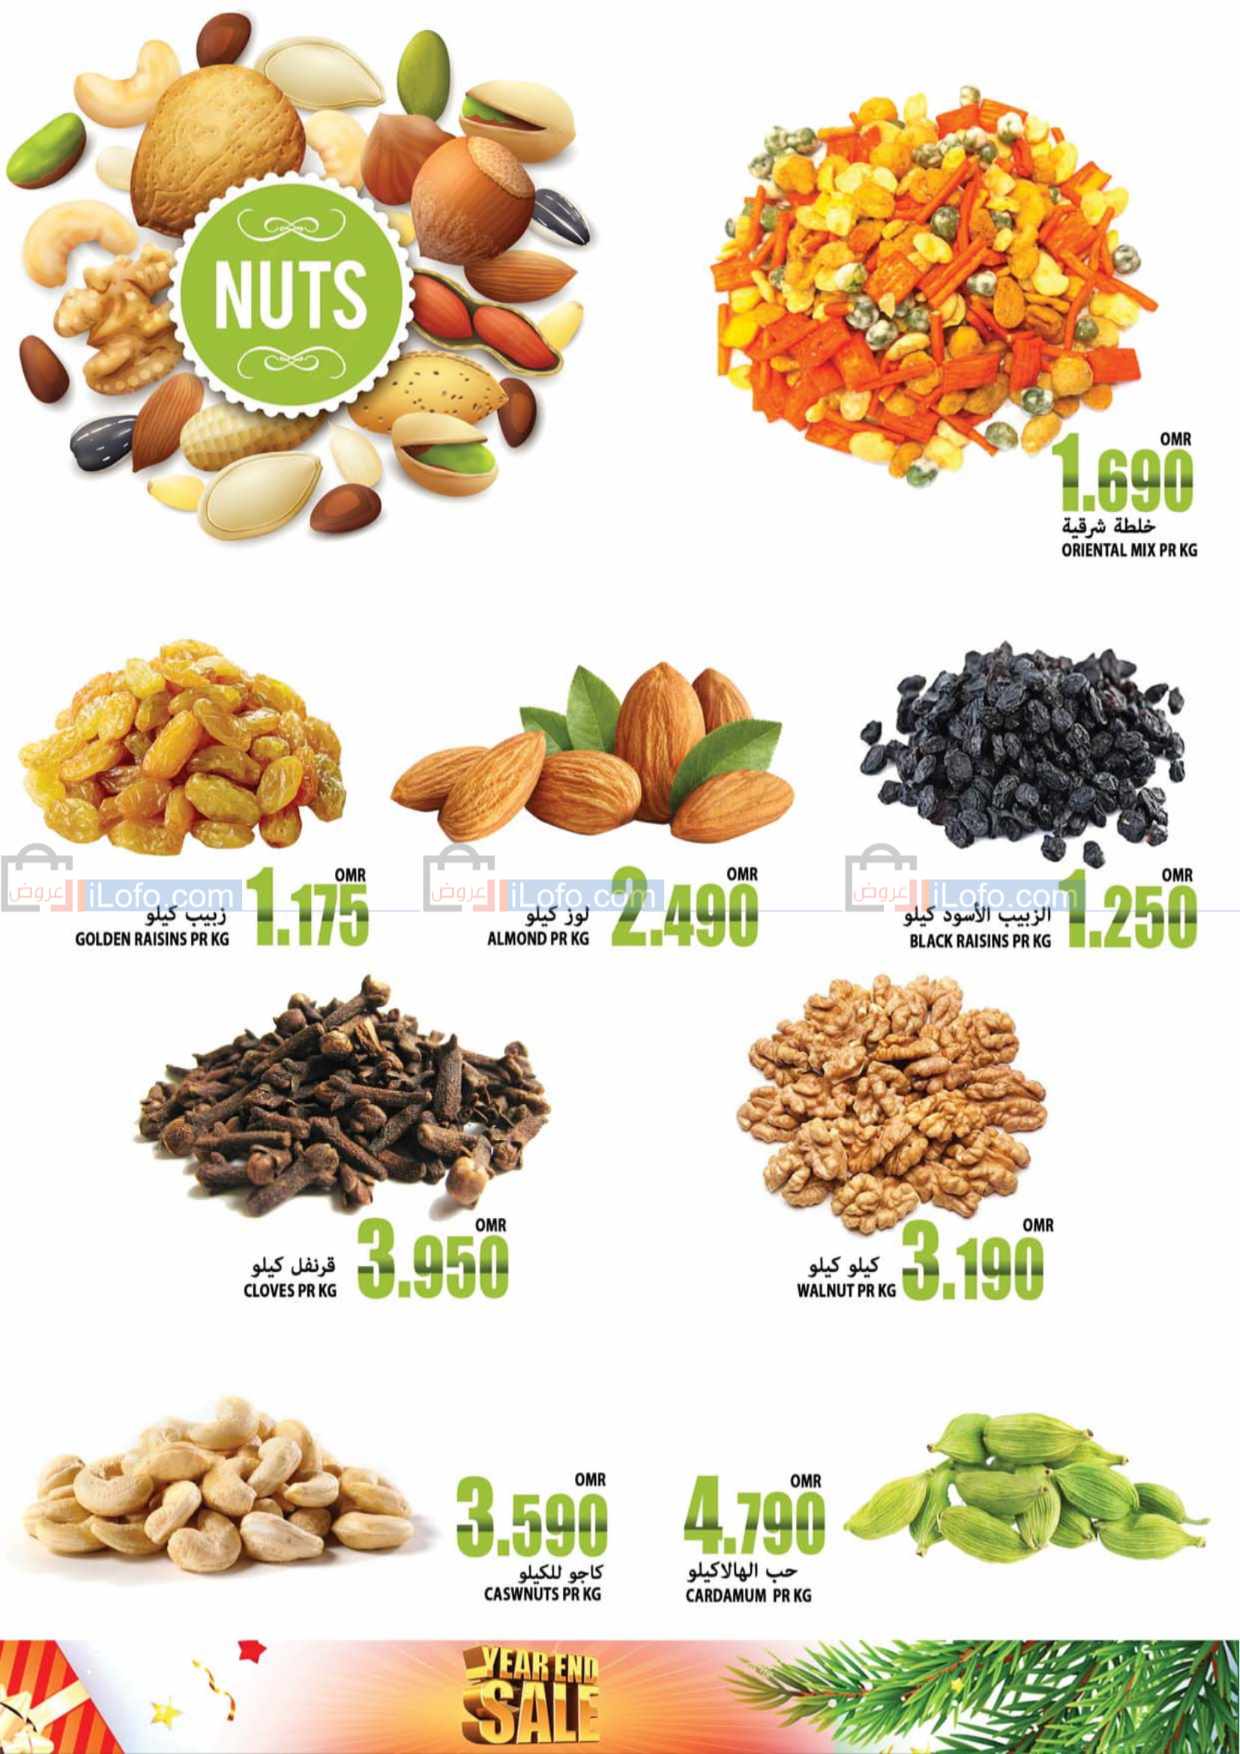 Page 13 at Year end sale at Al Badia hypermarket Oman Subaikhi